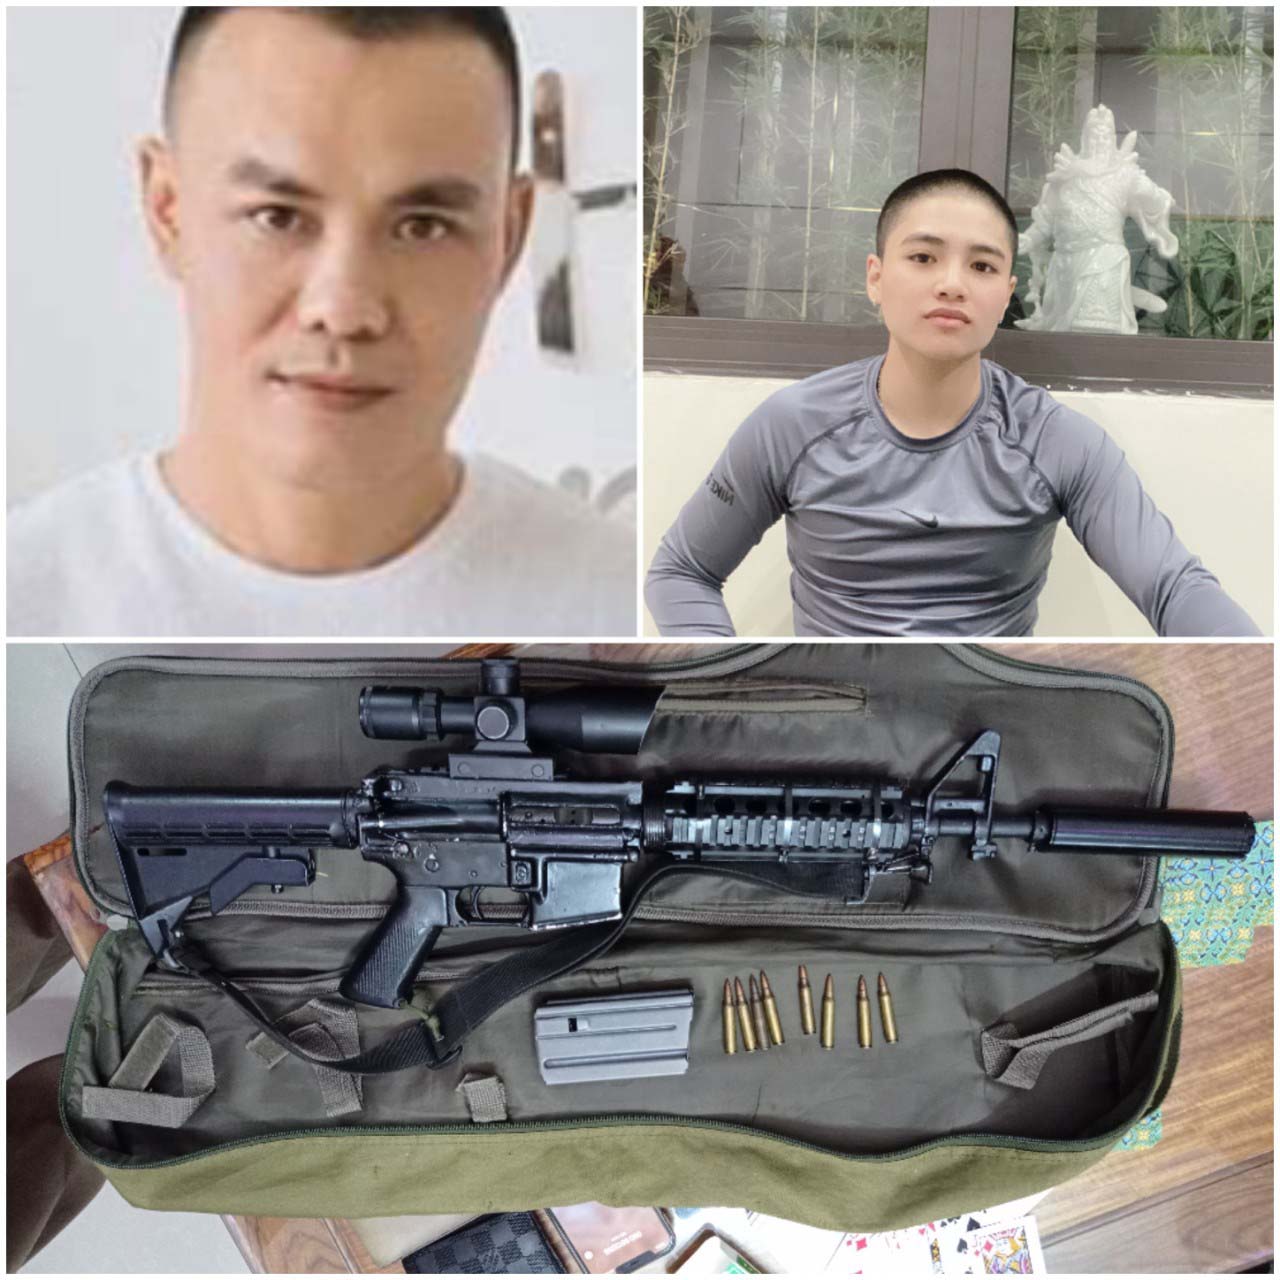 Đối tượng Nguyễn Hòa Minh (bên trái) và Võ Huỳnh Anh Tuấn cùng khẩu súng AR15 là tang vật vụ án. Ảnh: Lê Anh